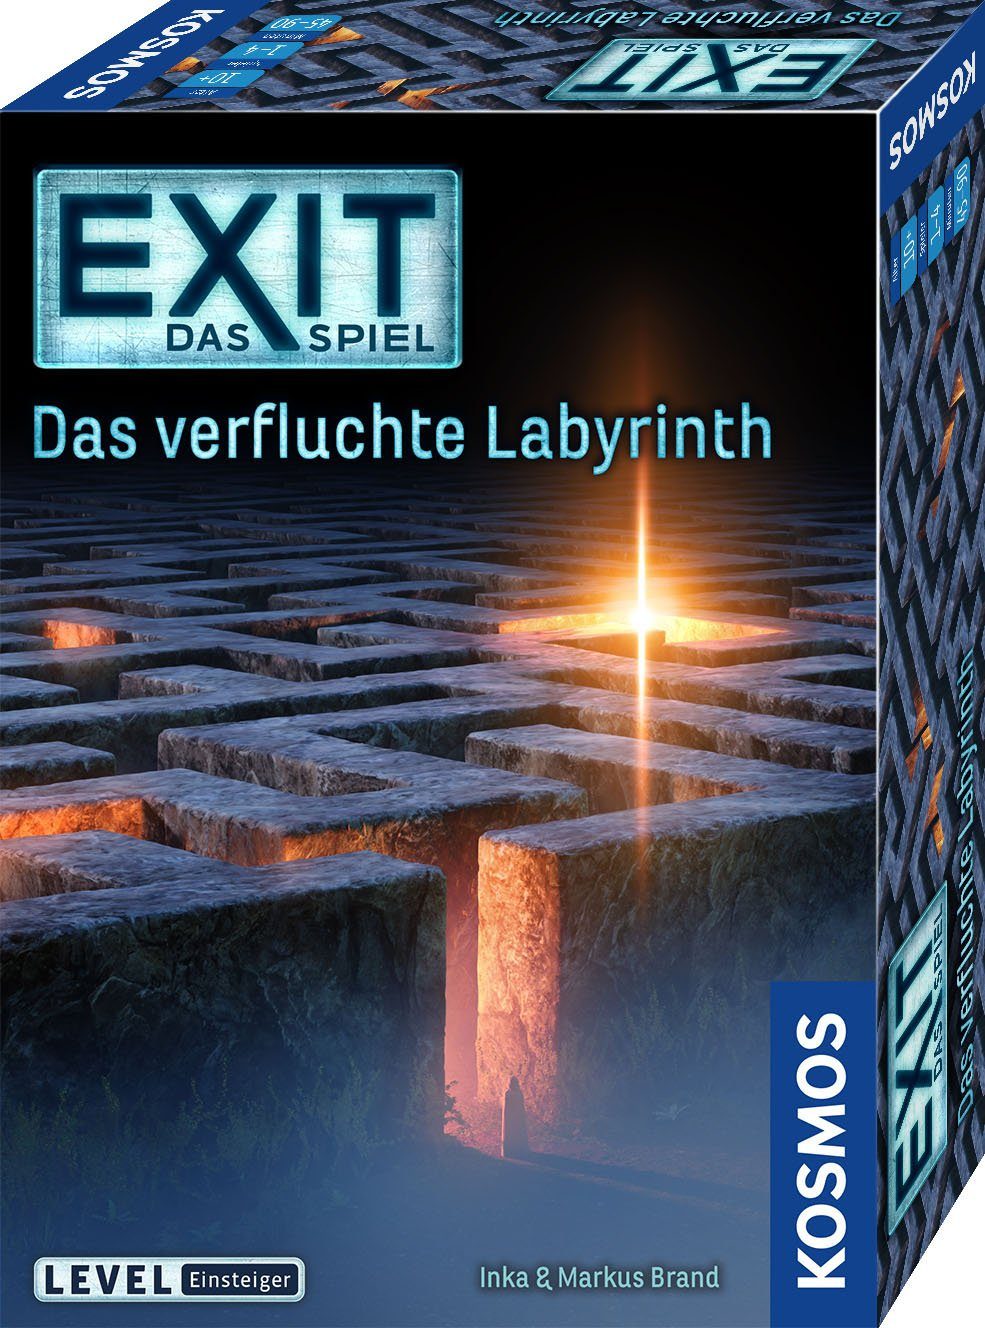 Kosmos Spiel, Escape Room Spiel EXIT - Das verfluchte Labyrinth, Made in Germany